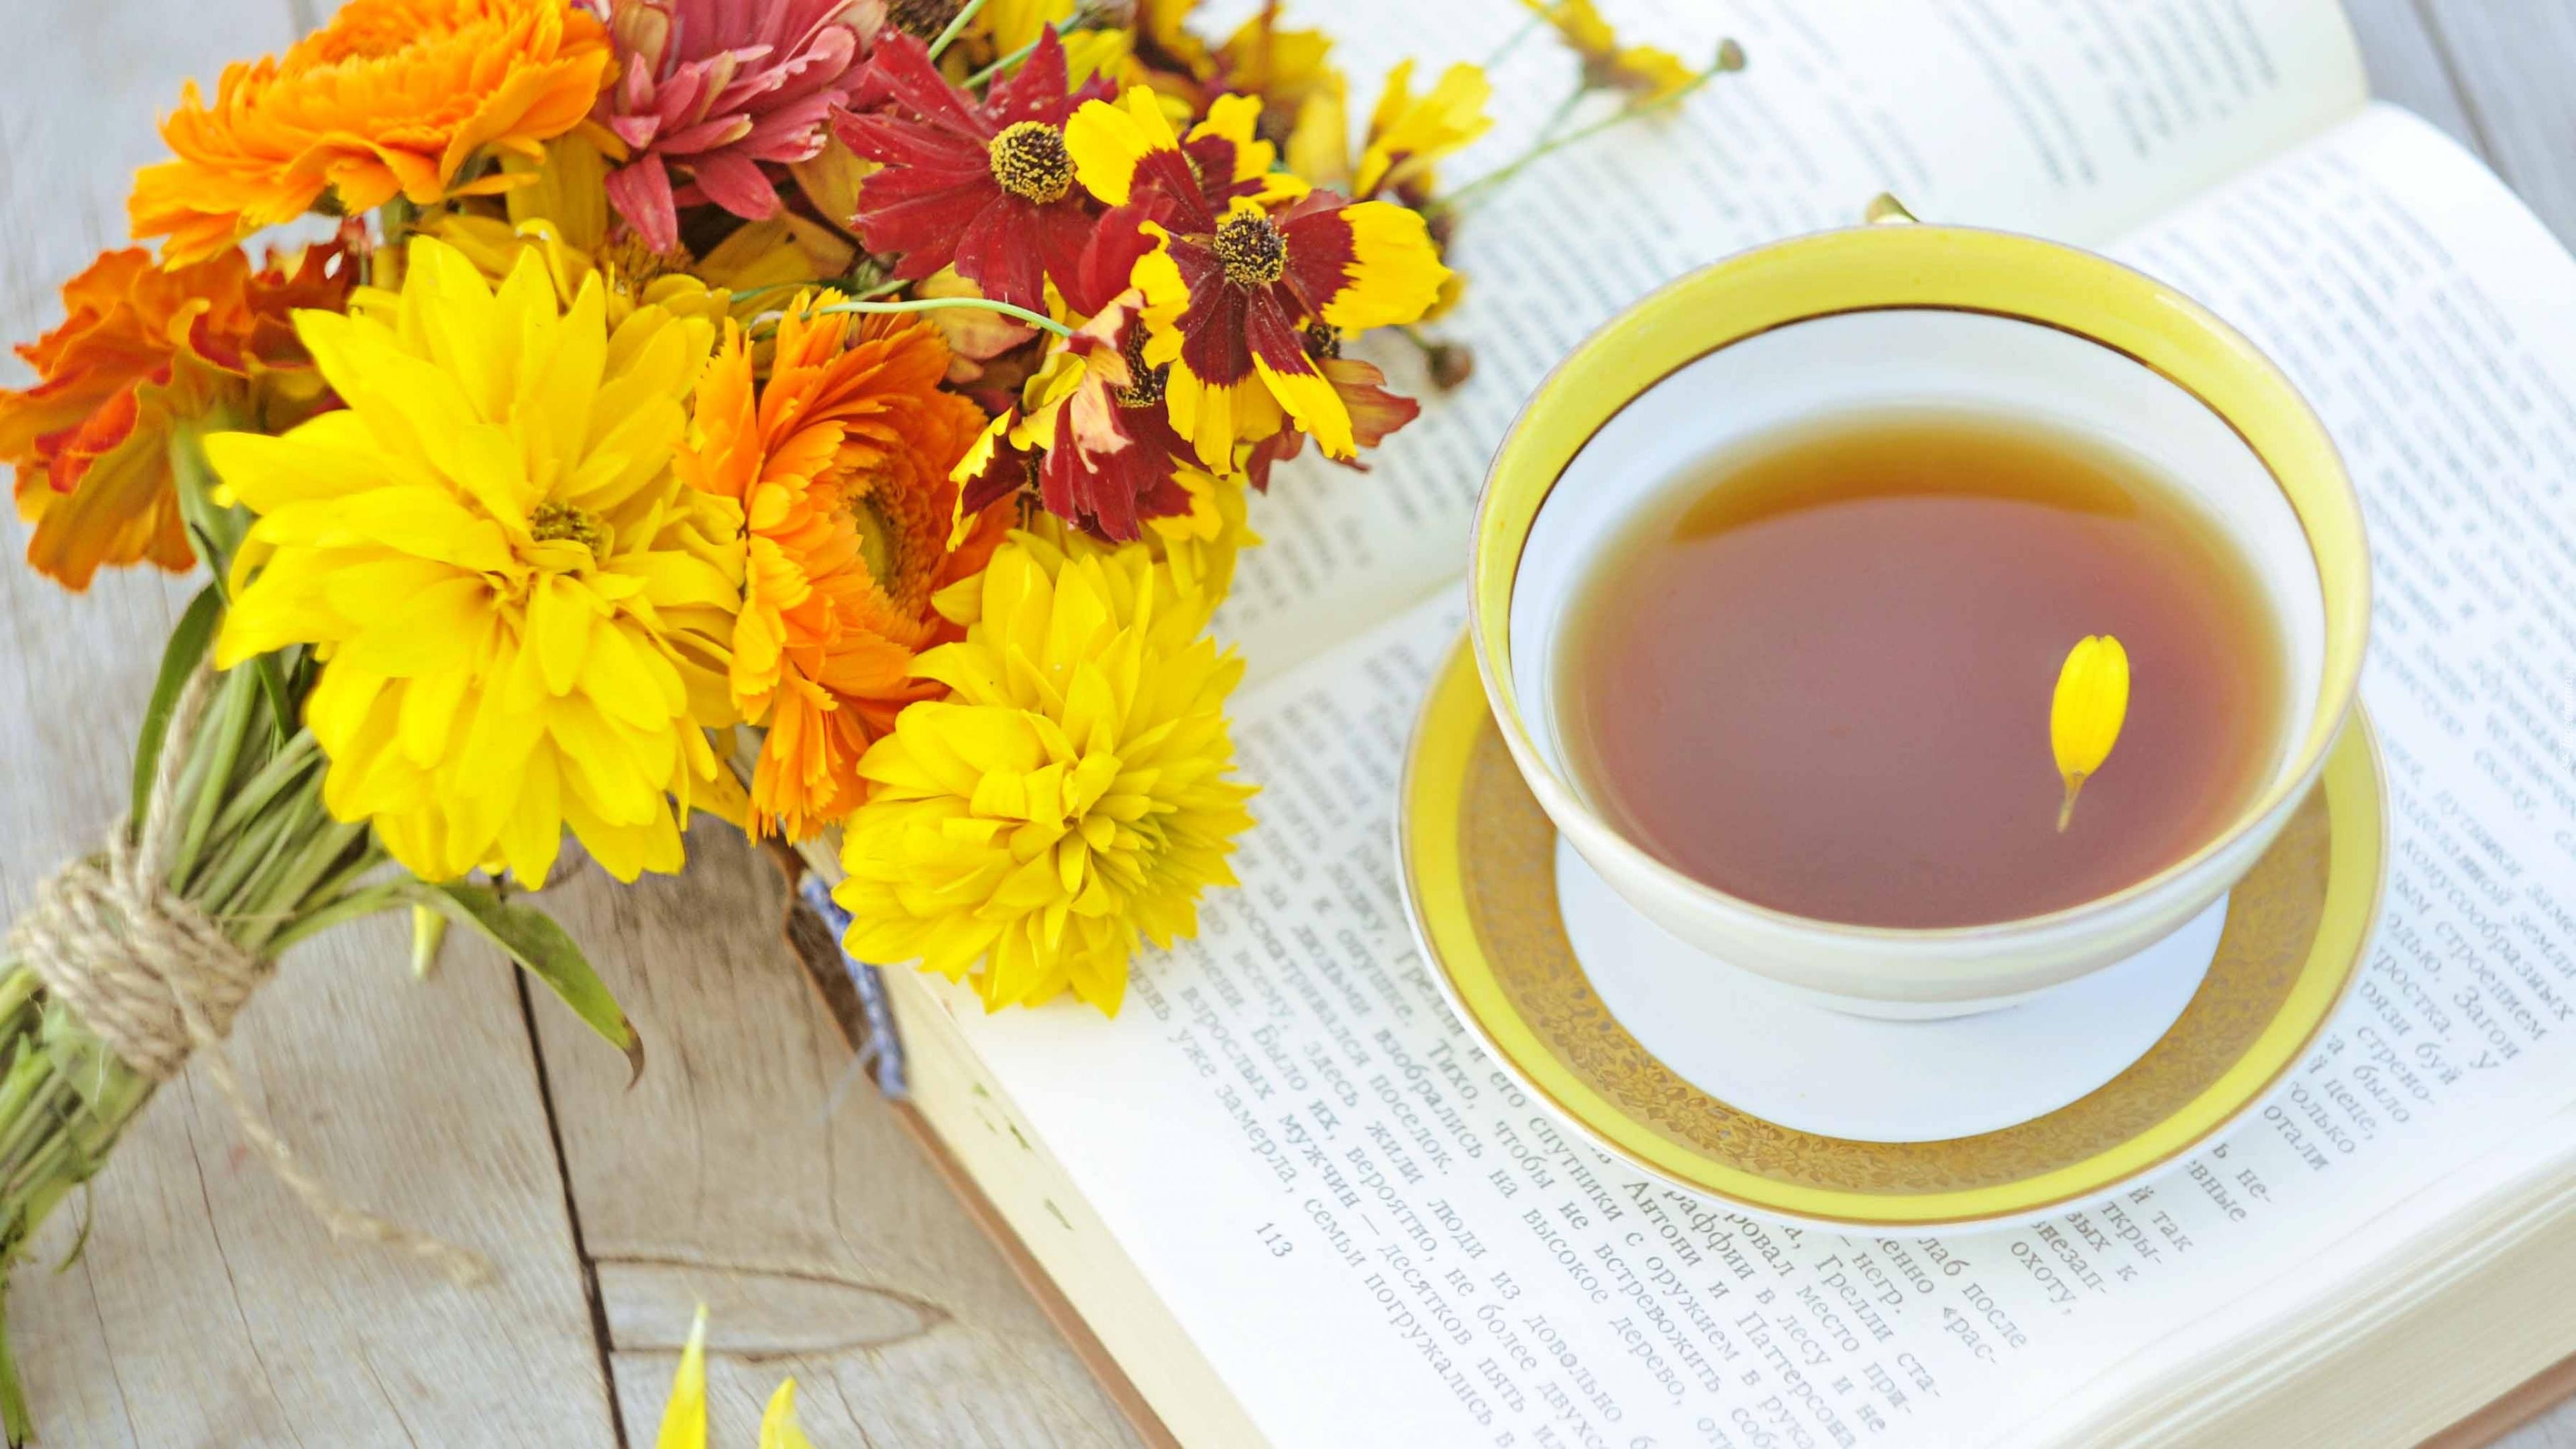 Herbata, Kwiaty, Książka